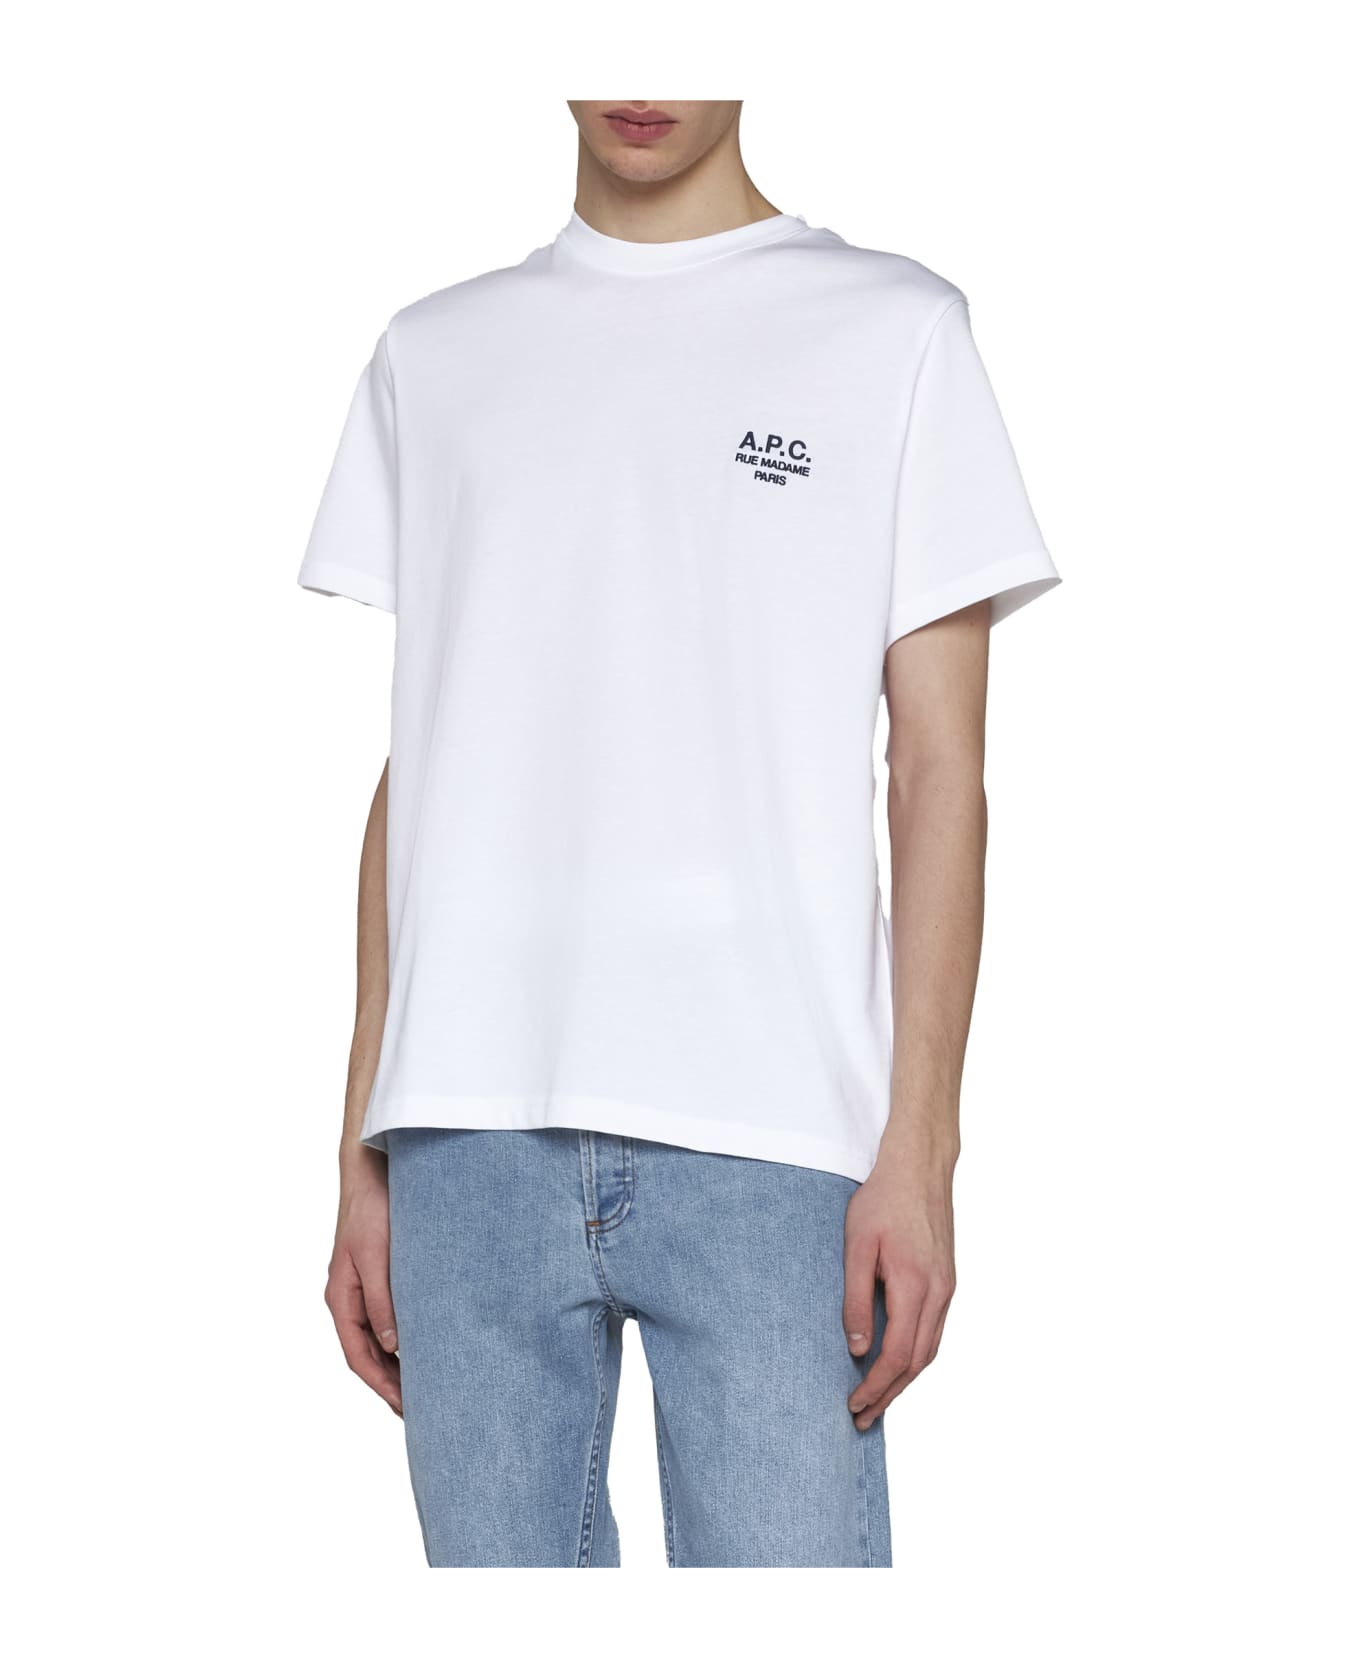 A.P.C. T-Shirt - White